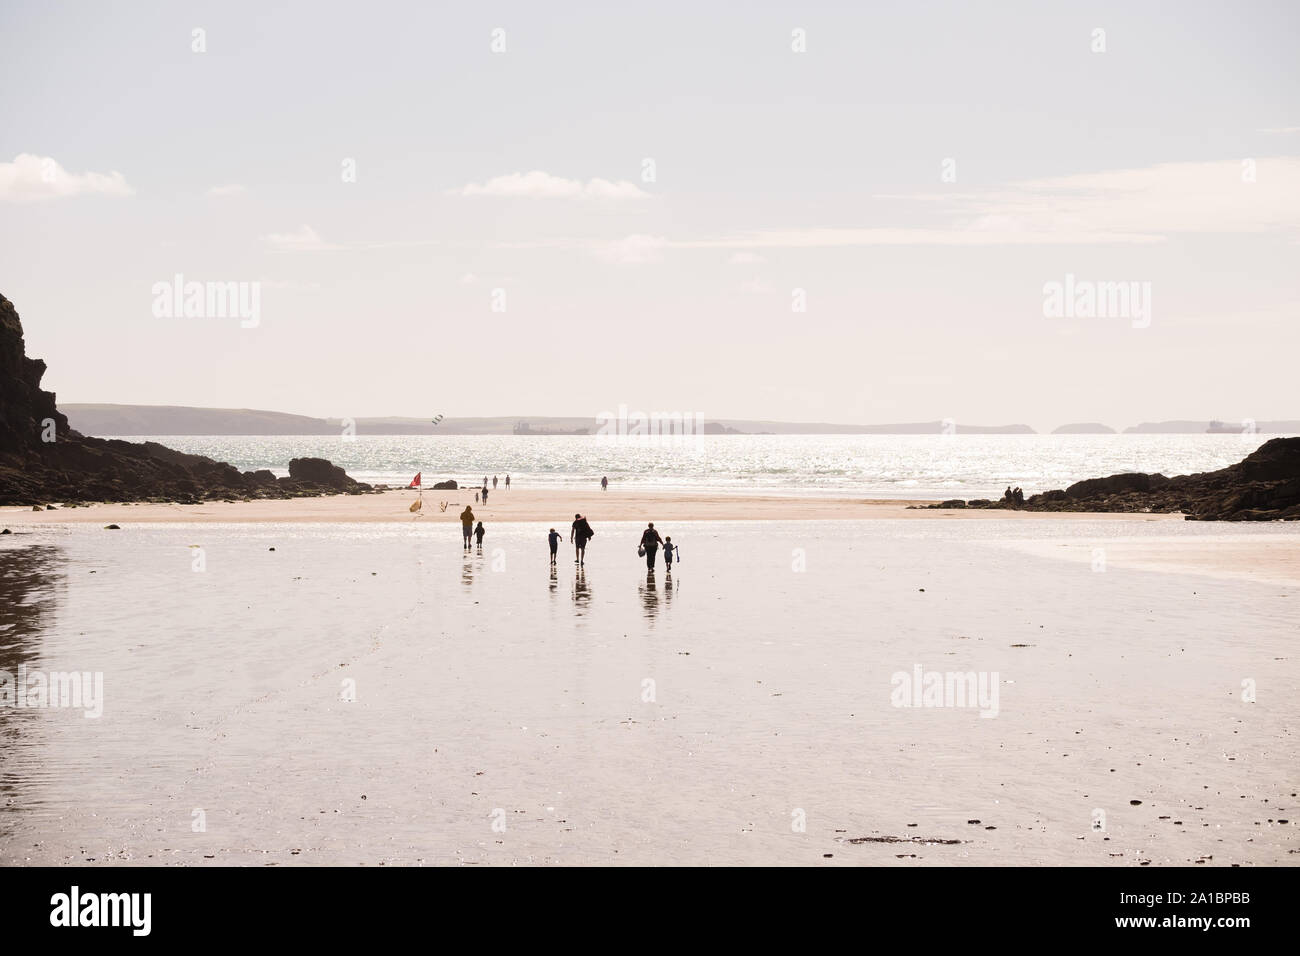 Vacaciones de verano en el REINO UNIDO: la gente en la playa de arena de Nolton refugio en la costa de St Bride's Bay, el Parque Nacional de Pembrokeshire, al sur de Gales Occidental UK Foto de stock